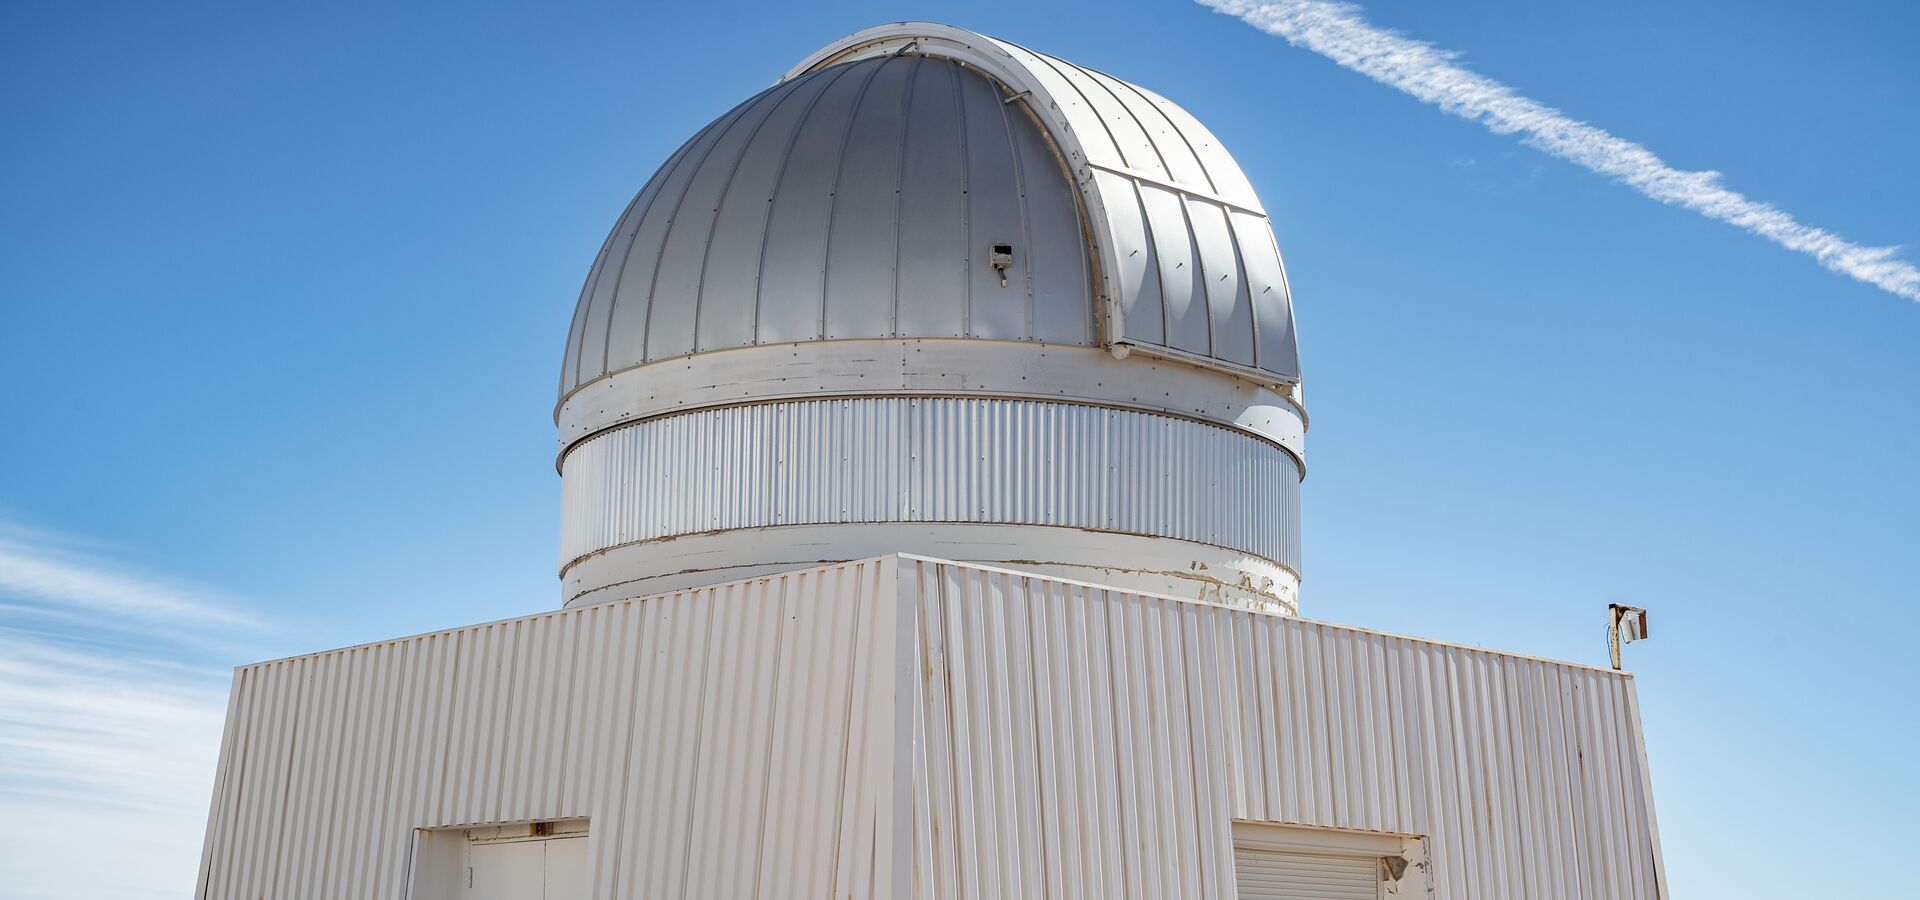 Fotografía del Telescopio del Sur Profundo del Observatorio Naval de los Estados Unidos